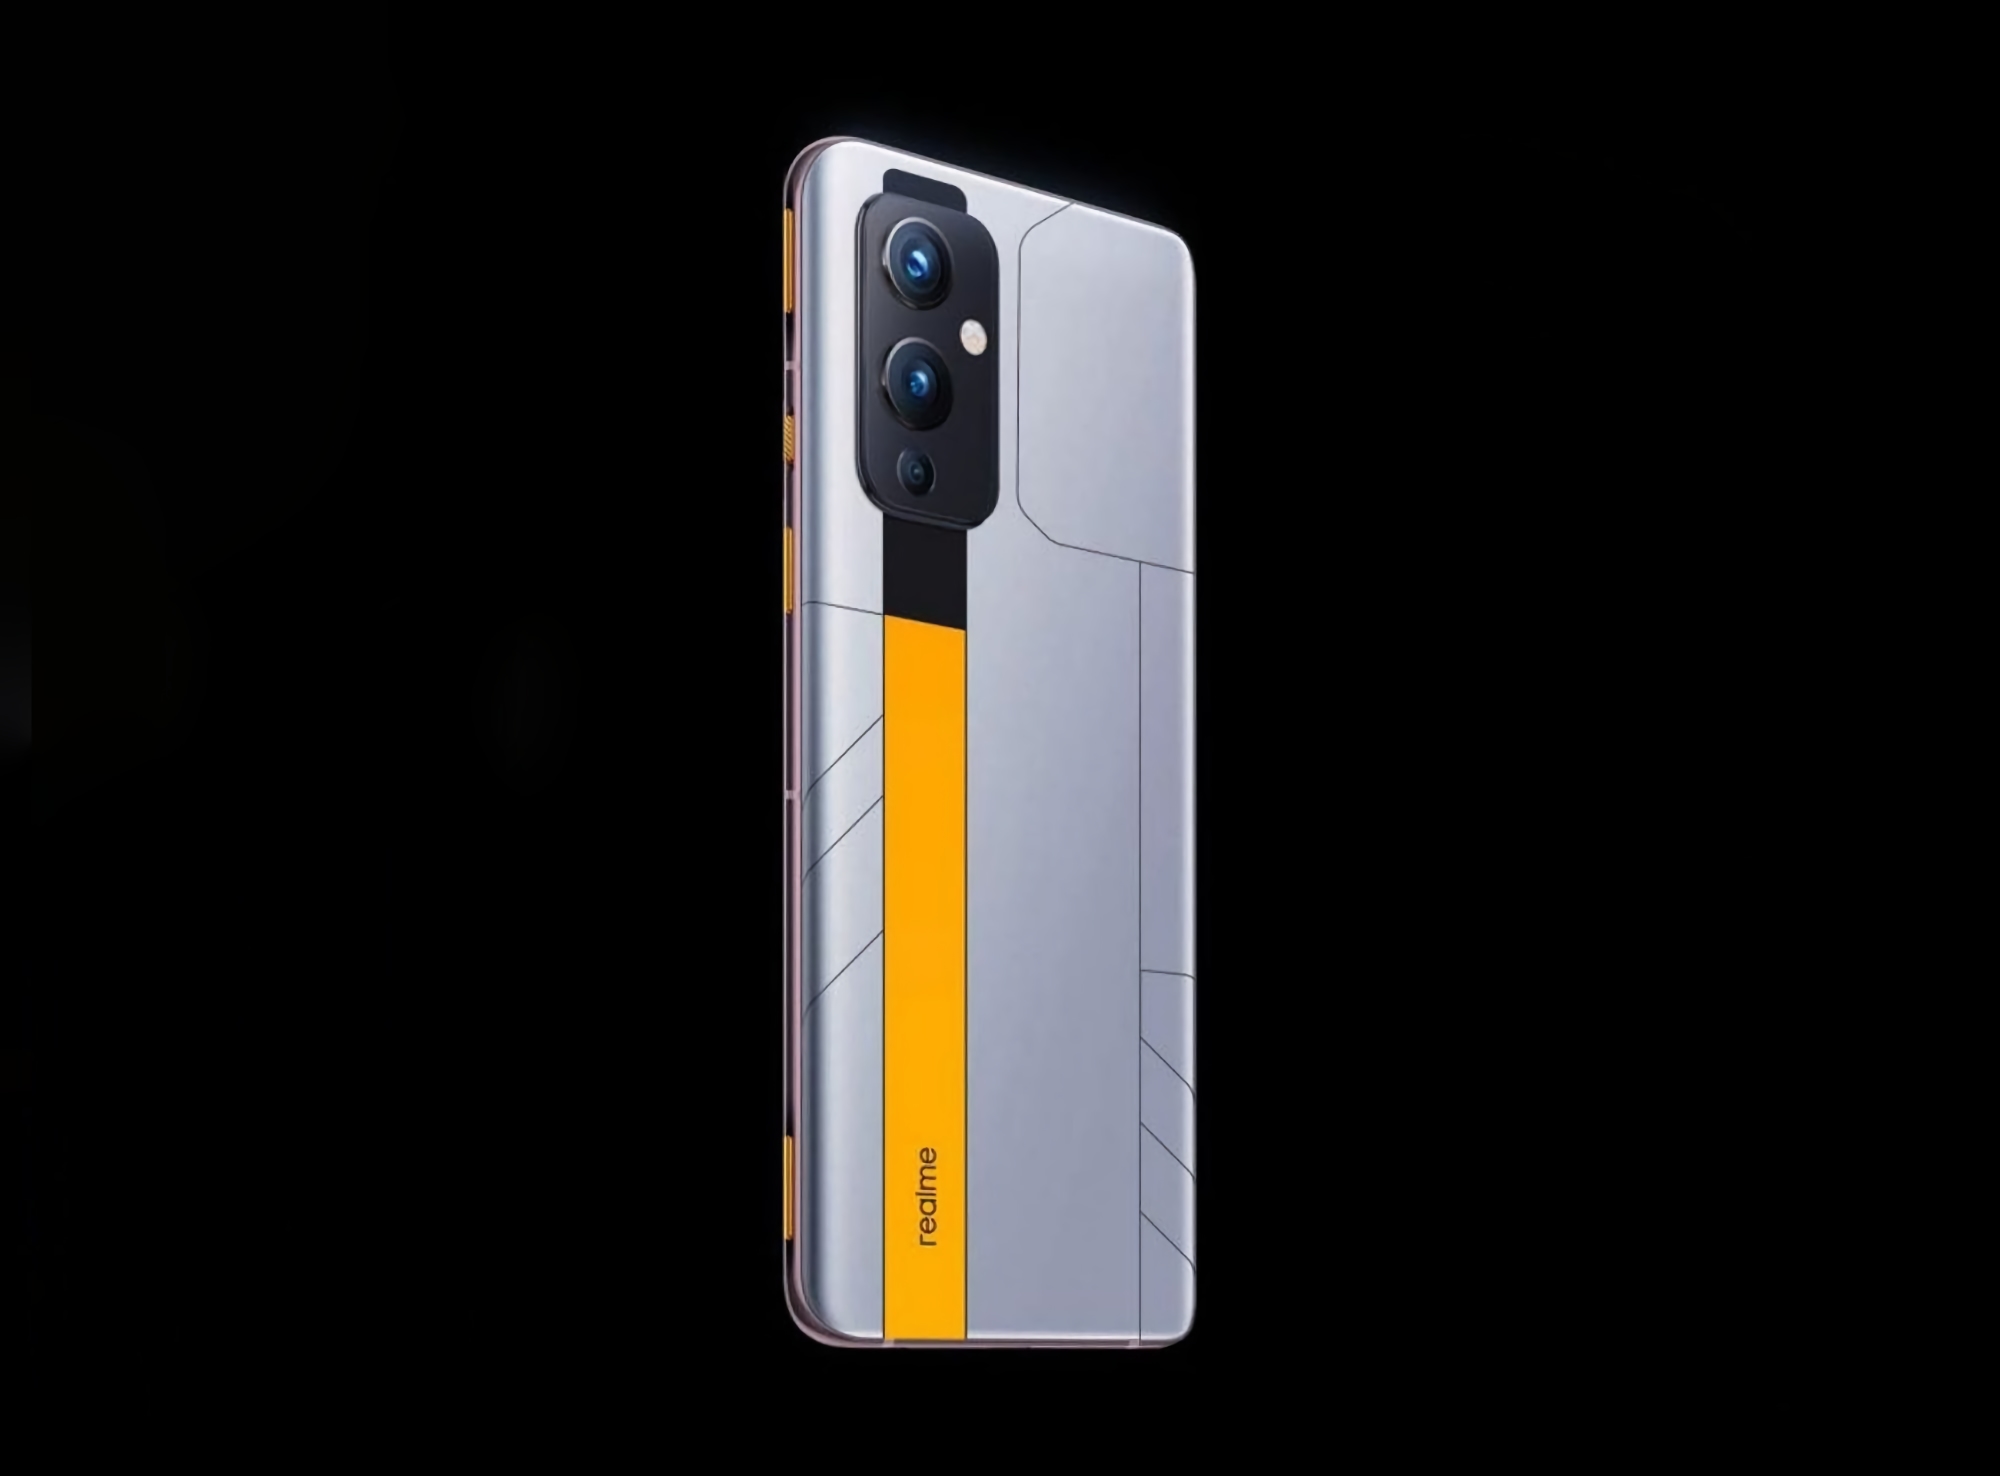 Puce Dimensity 9000, charge 120W et triple caméra : les détails et le rendu du smartphone realme GT Neo 3 sont apparus sur le réseau